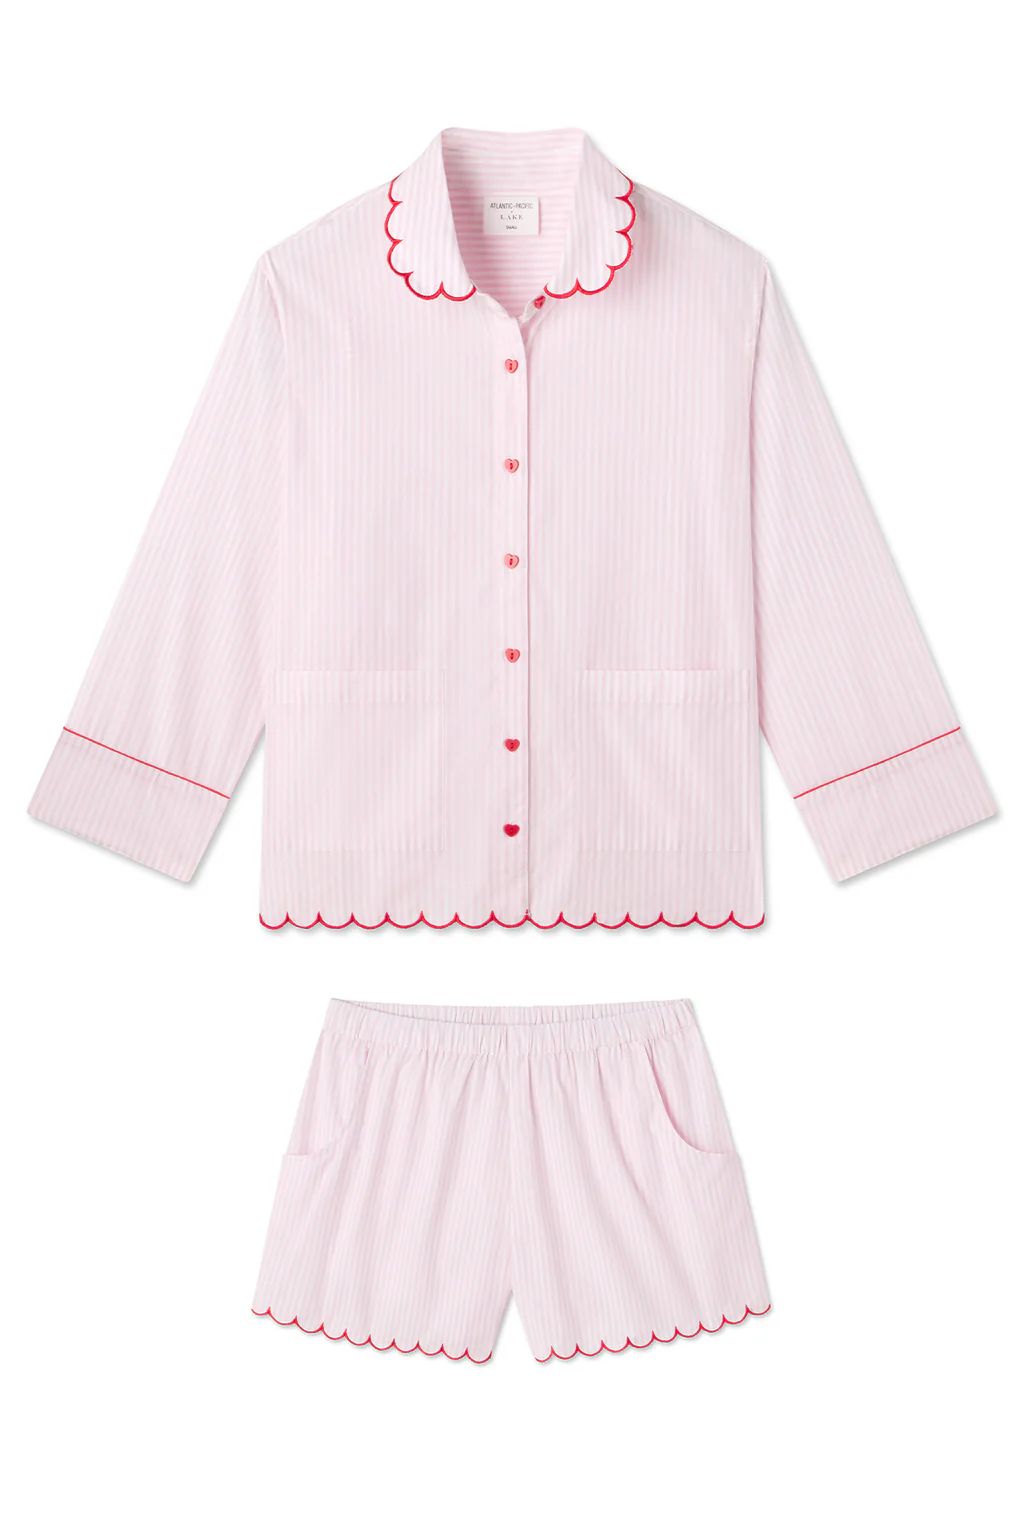 Lottie Shorts Set in Primrose Stripe | Lake Pajamas